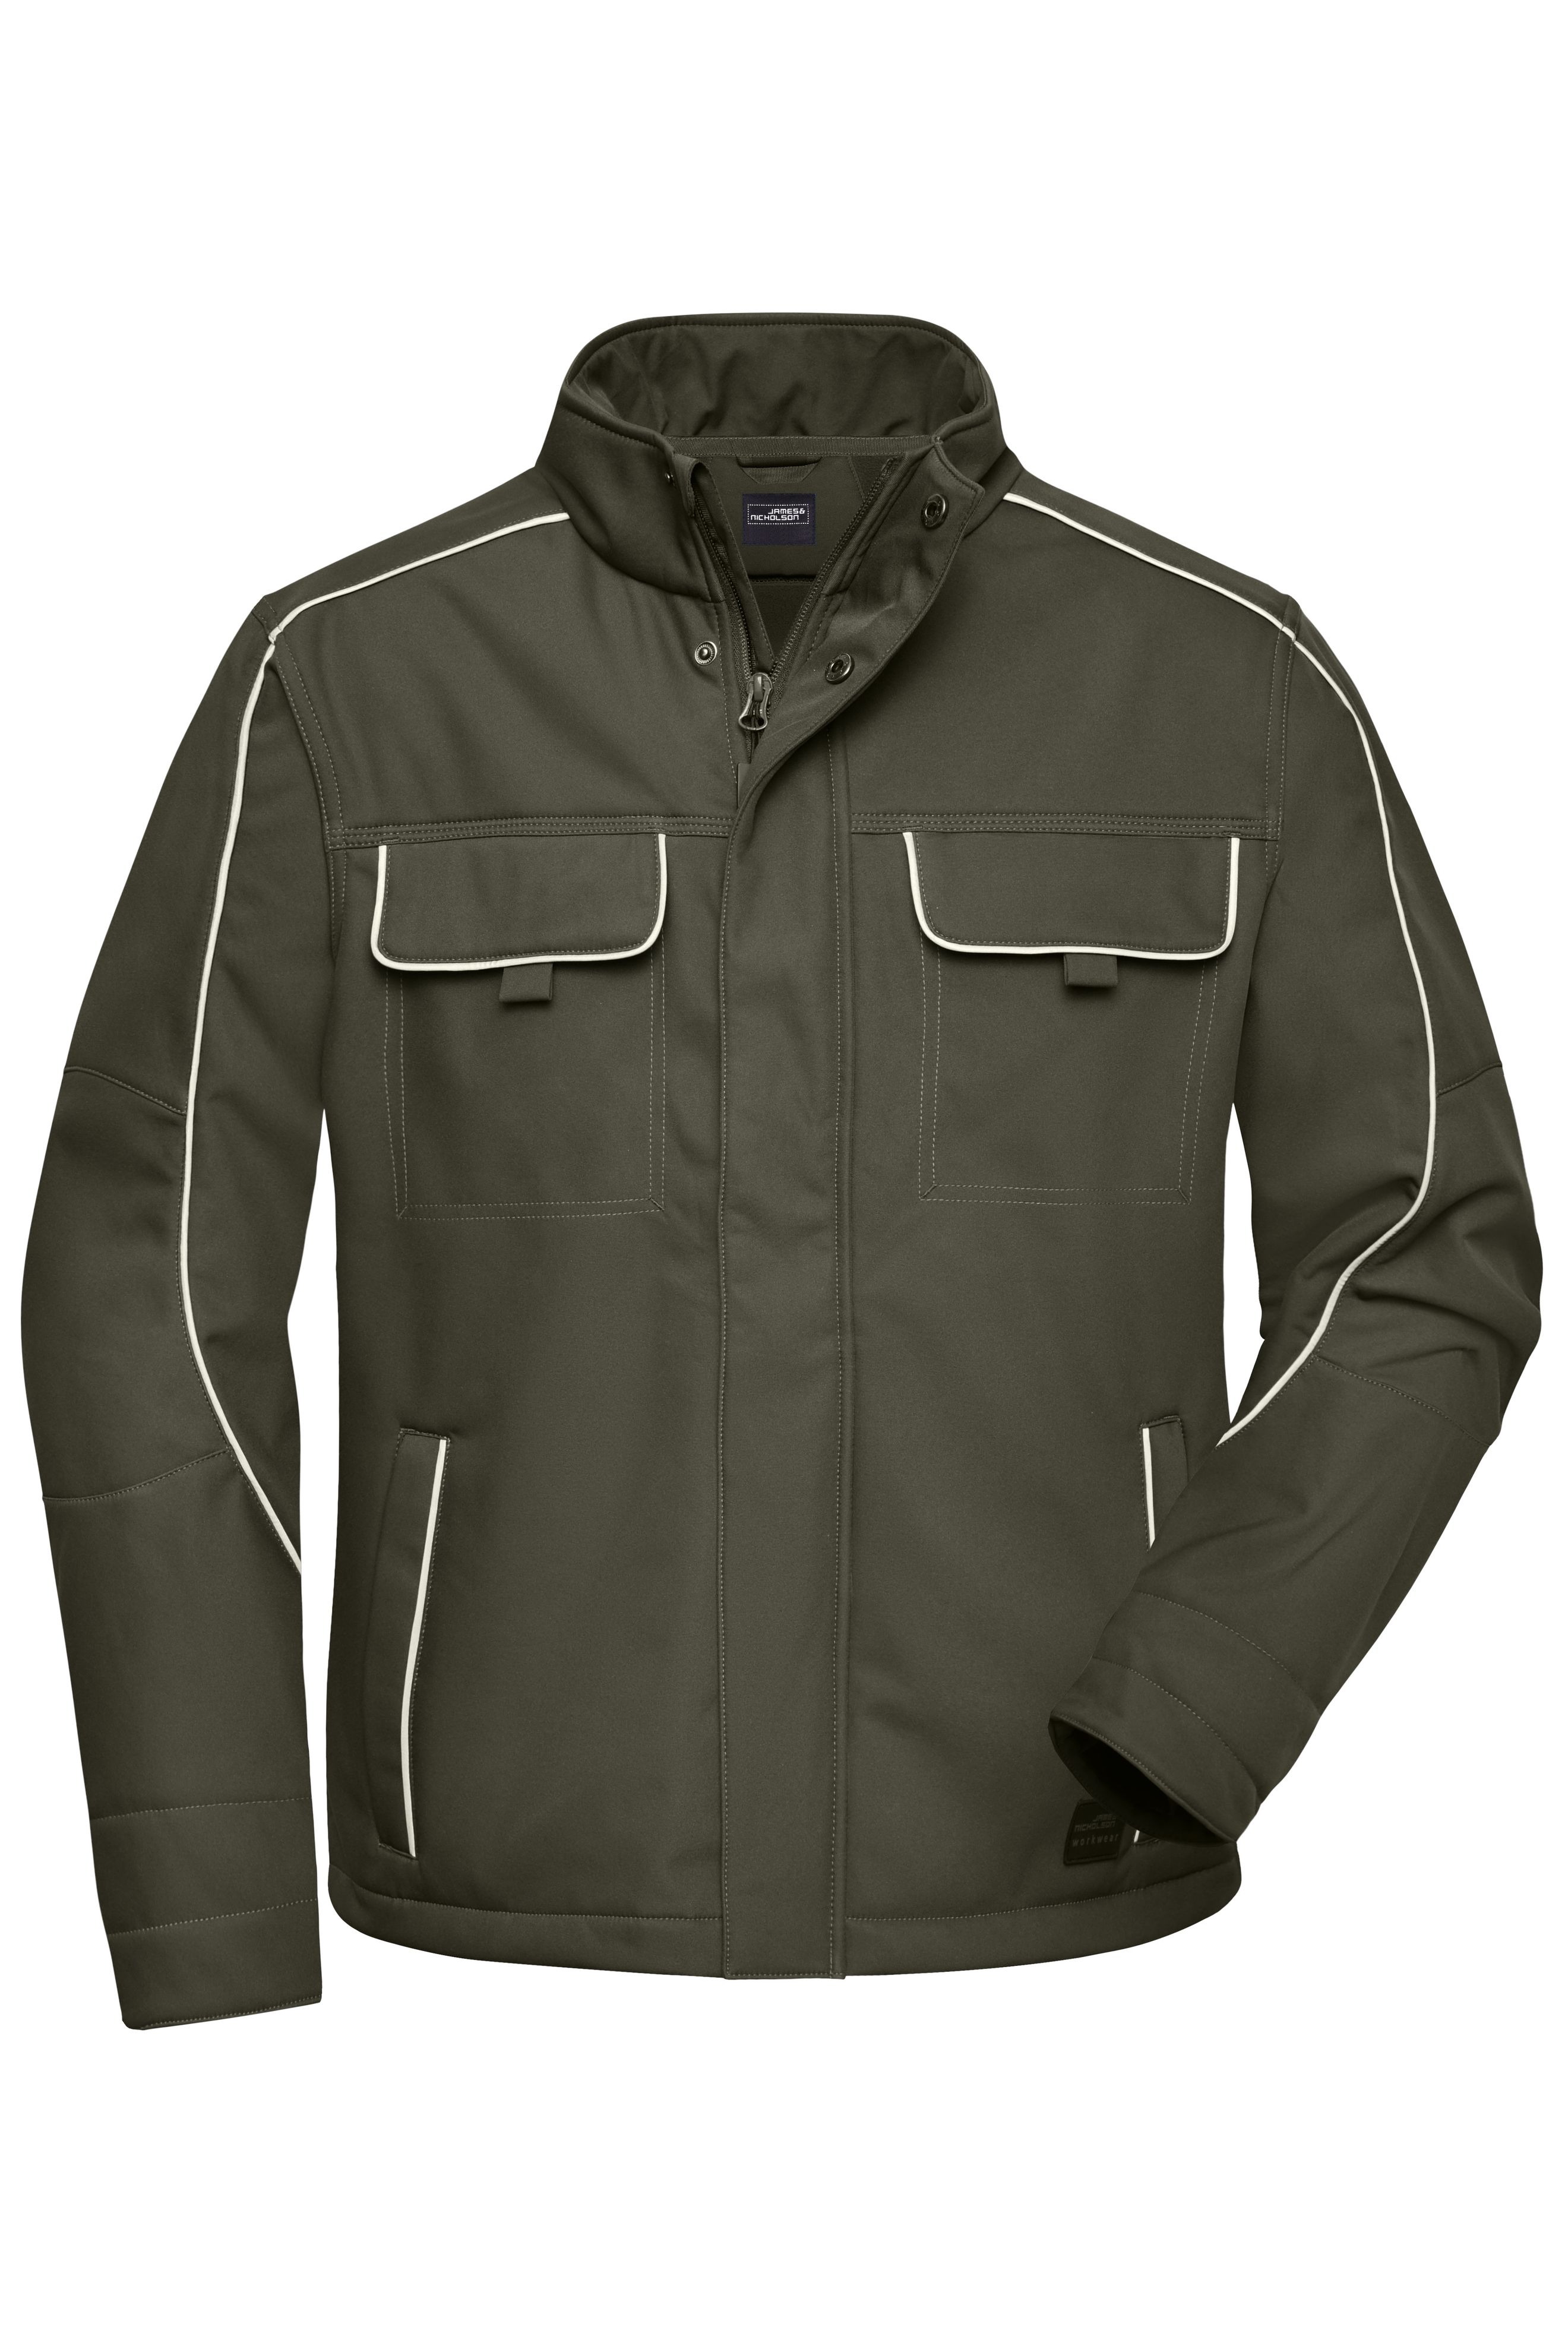 Workwear Softshell Jacket - SOLID - JN884 Professionelle Softshelljacke im cleanen Look mit hochwertigen Details